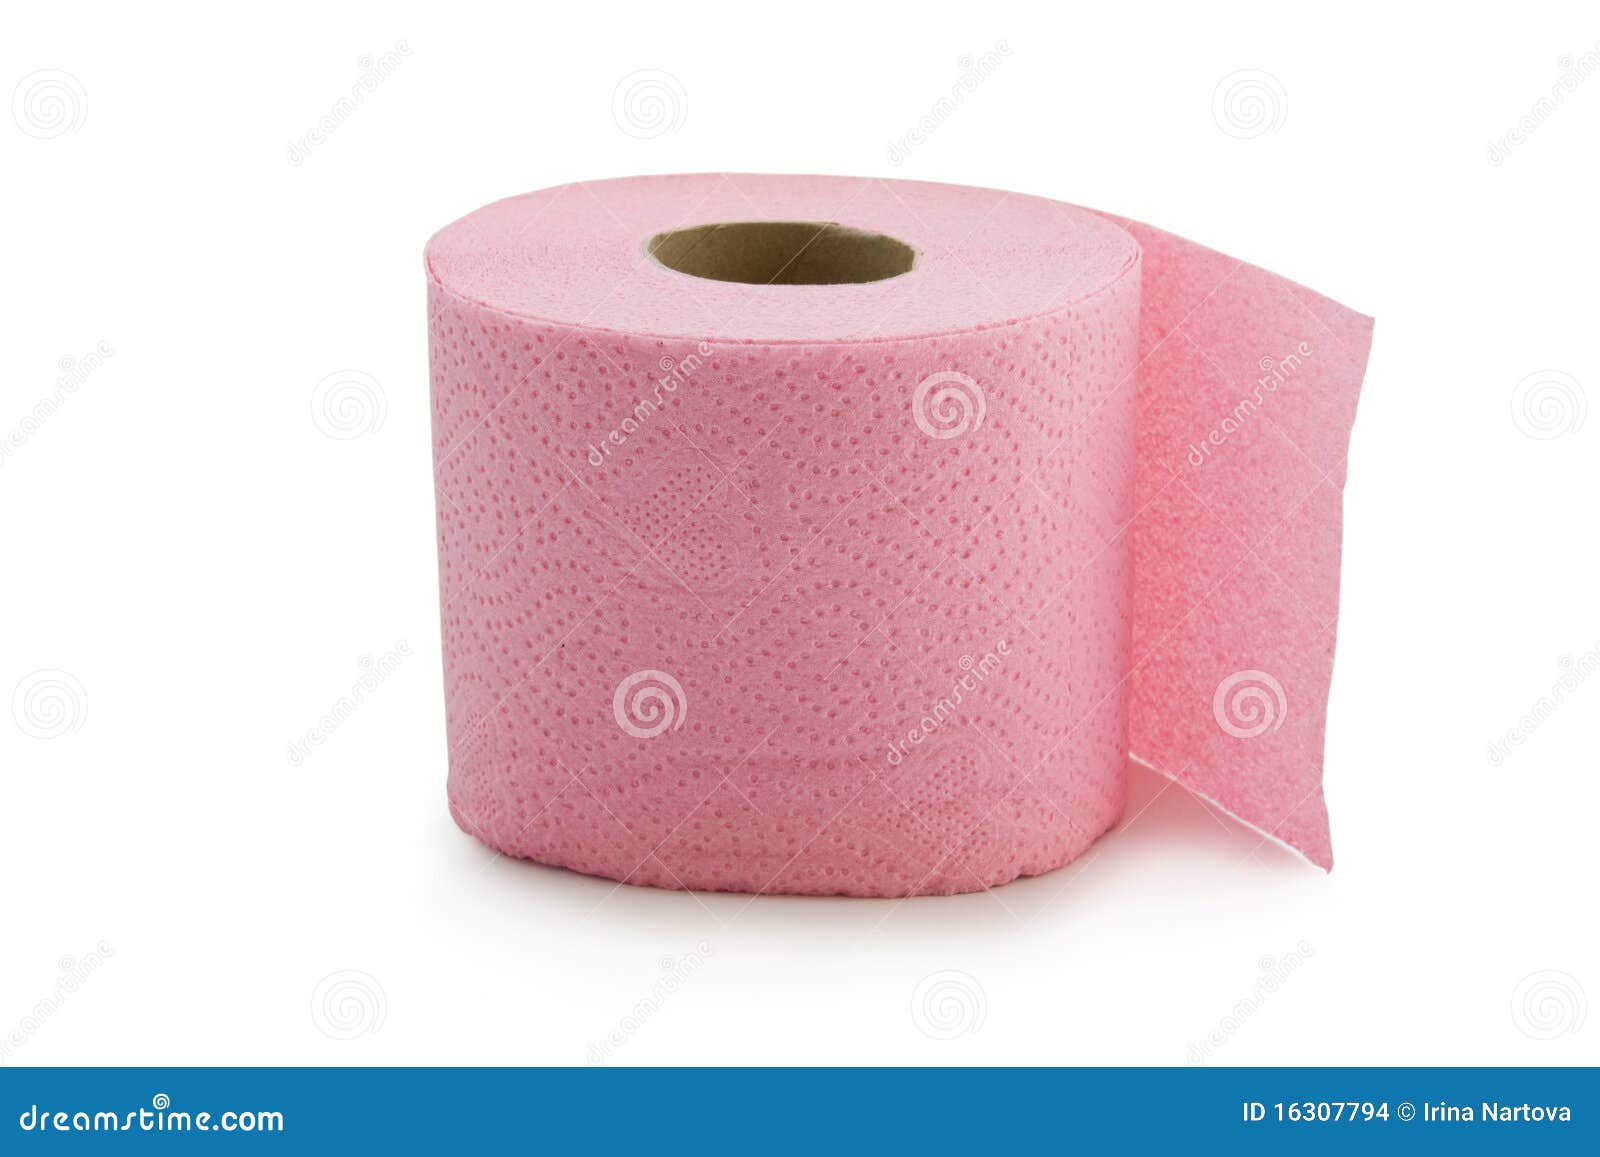 Розовая туалетная бумага. Туалетная бумага в розовой упаковке. Ярко розовая туалетная бумага. Туалетная бумага розового белого цвета.